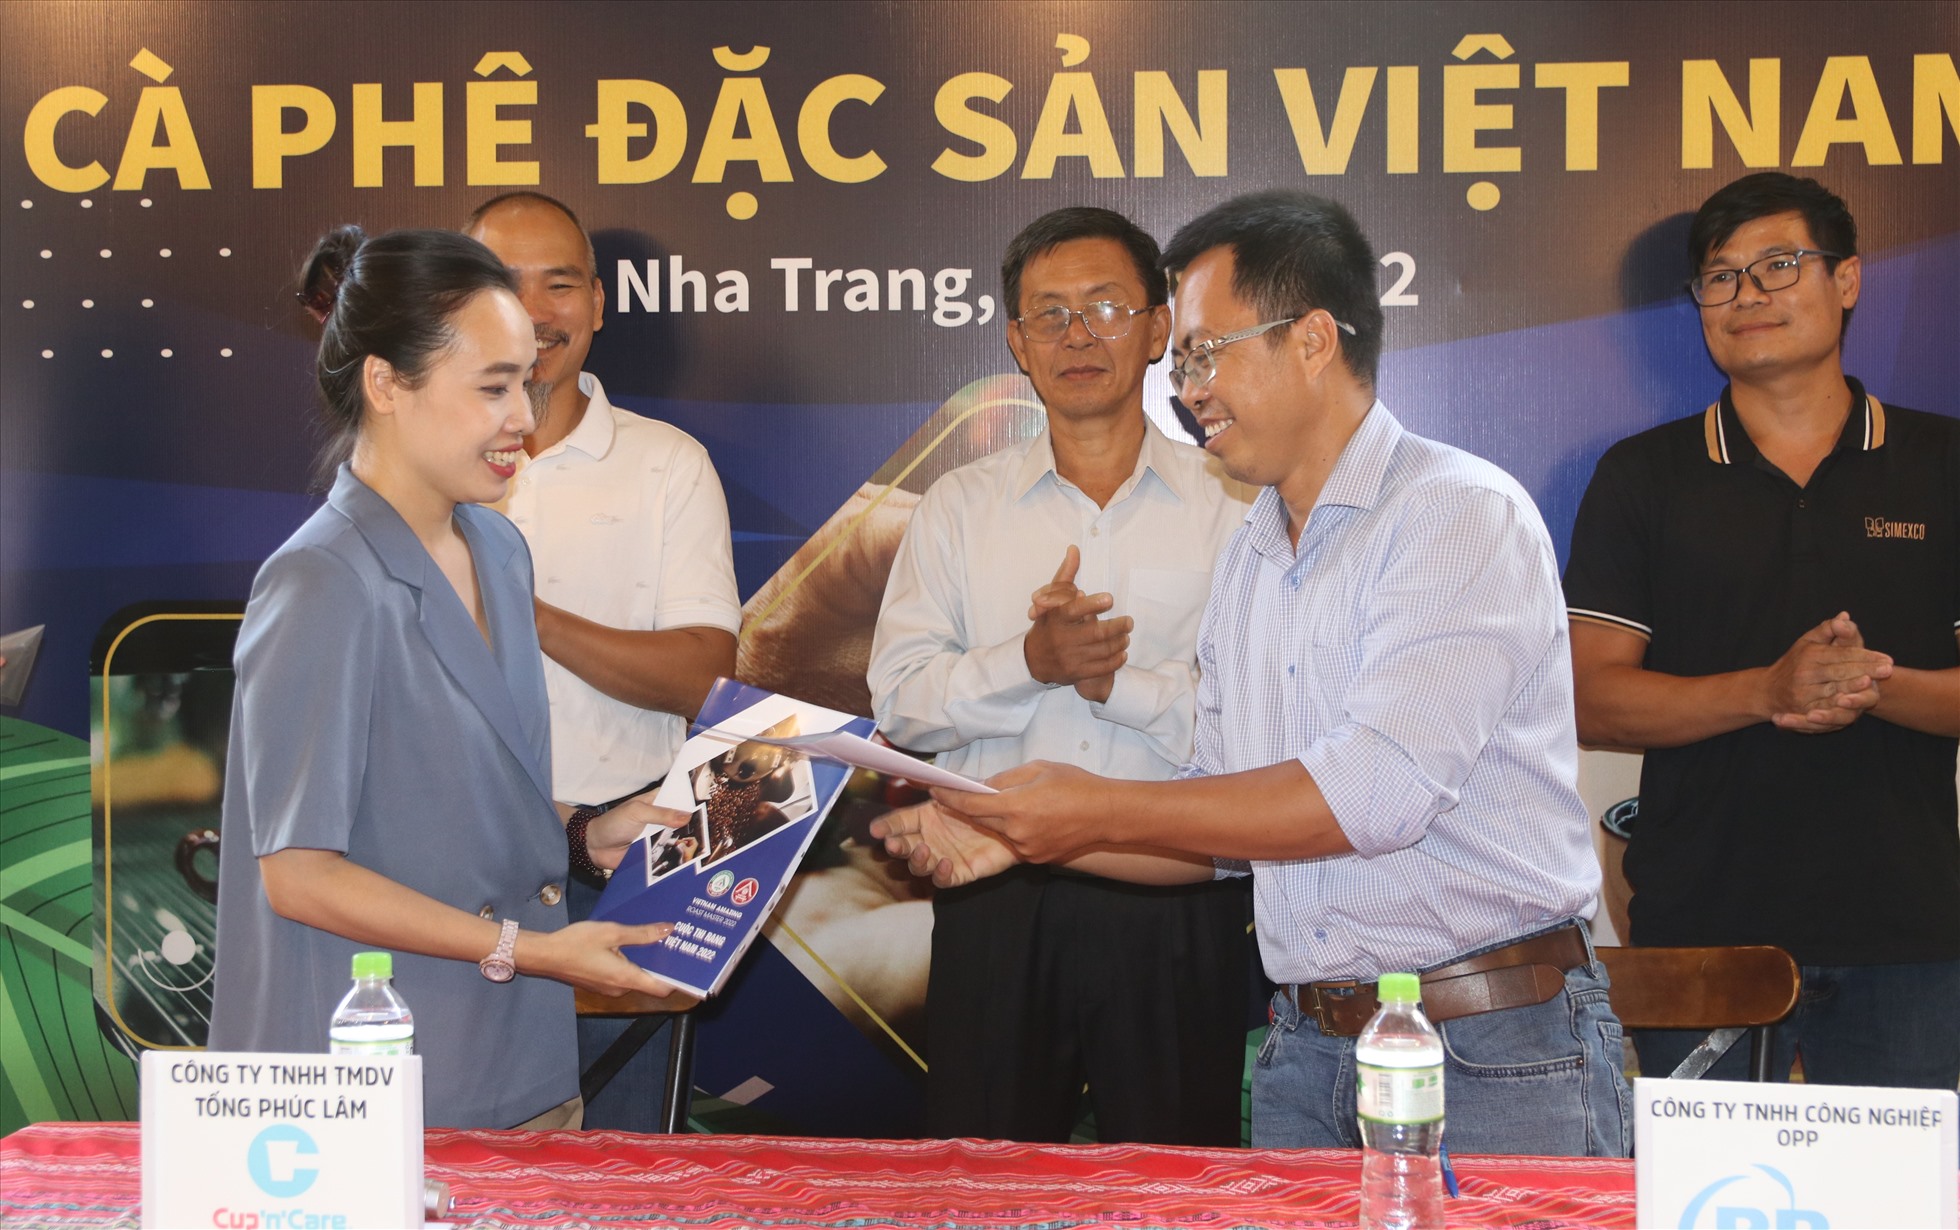 Kết thúc hành trình trải nghiệm cà phê đặc sản Việt Nam tại Nha Trang các đơn vị tham gia chuỗi cà phê đặc sản Việt Nam đã có nhiều ký kết mạnh mẽ để phát triển dòng sản phẩm cà phê chất lượng, mang lại giá trị thực sự cho người nông dân.